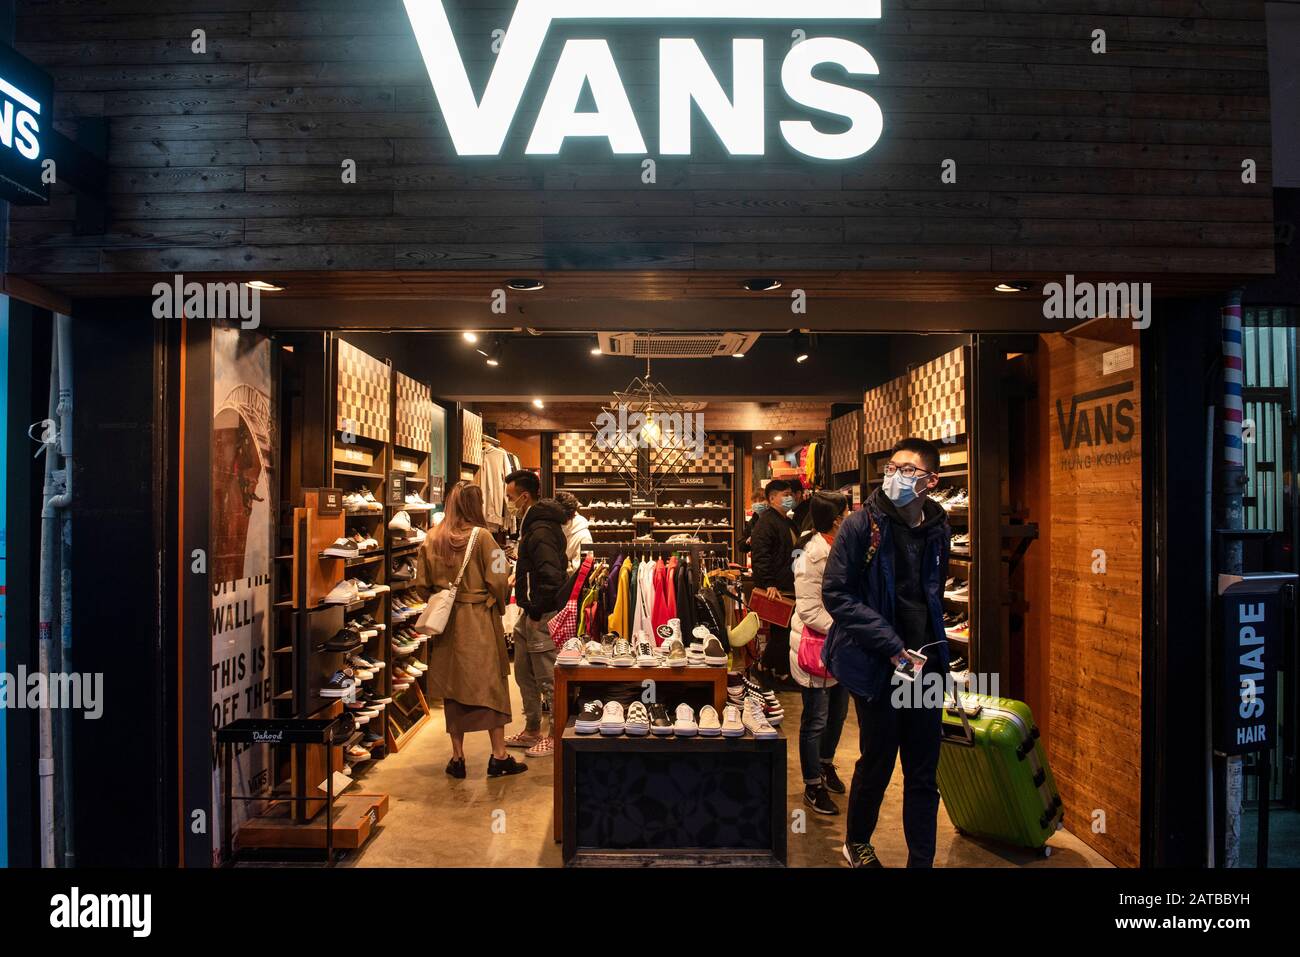 Vans Store Banque d'image et photos - Alamy